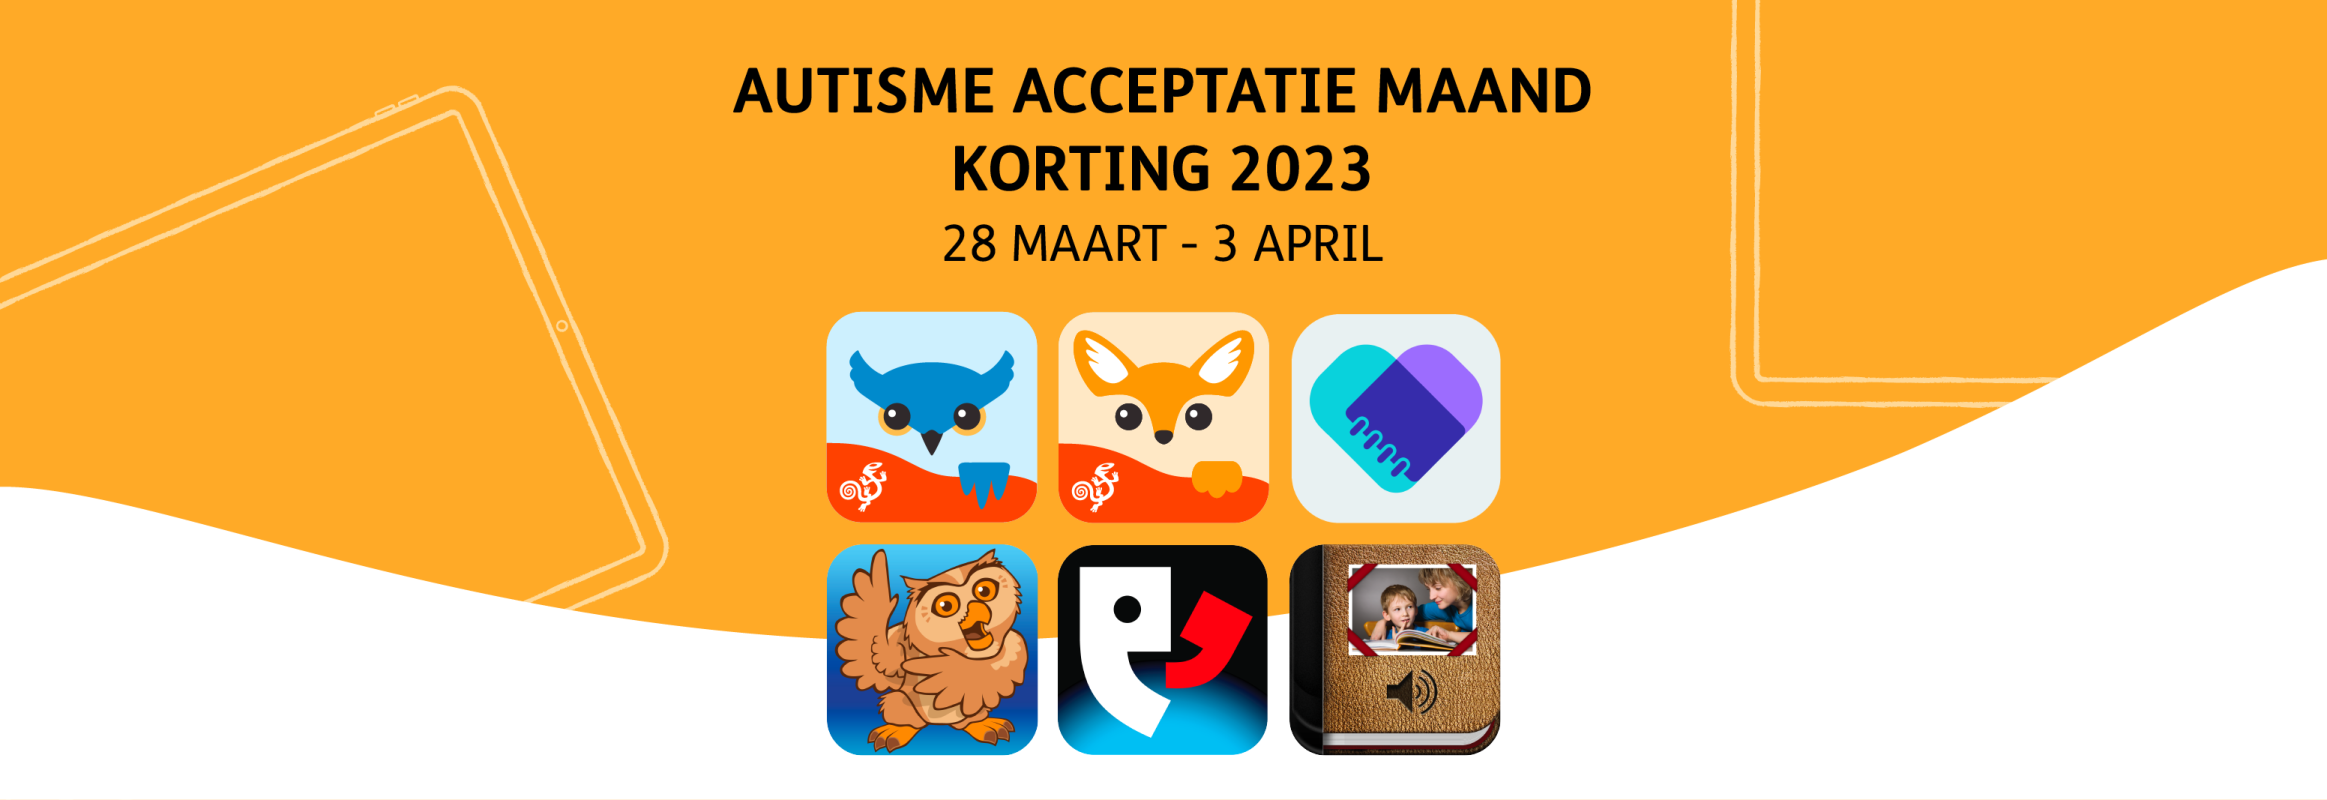 Autisme Acceptatie Maand Korting 2023 / 28 Maart - 3 April